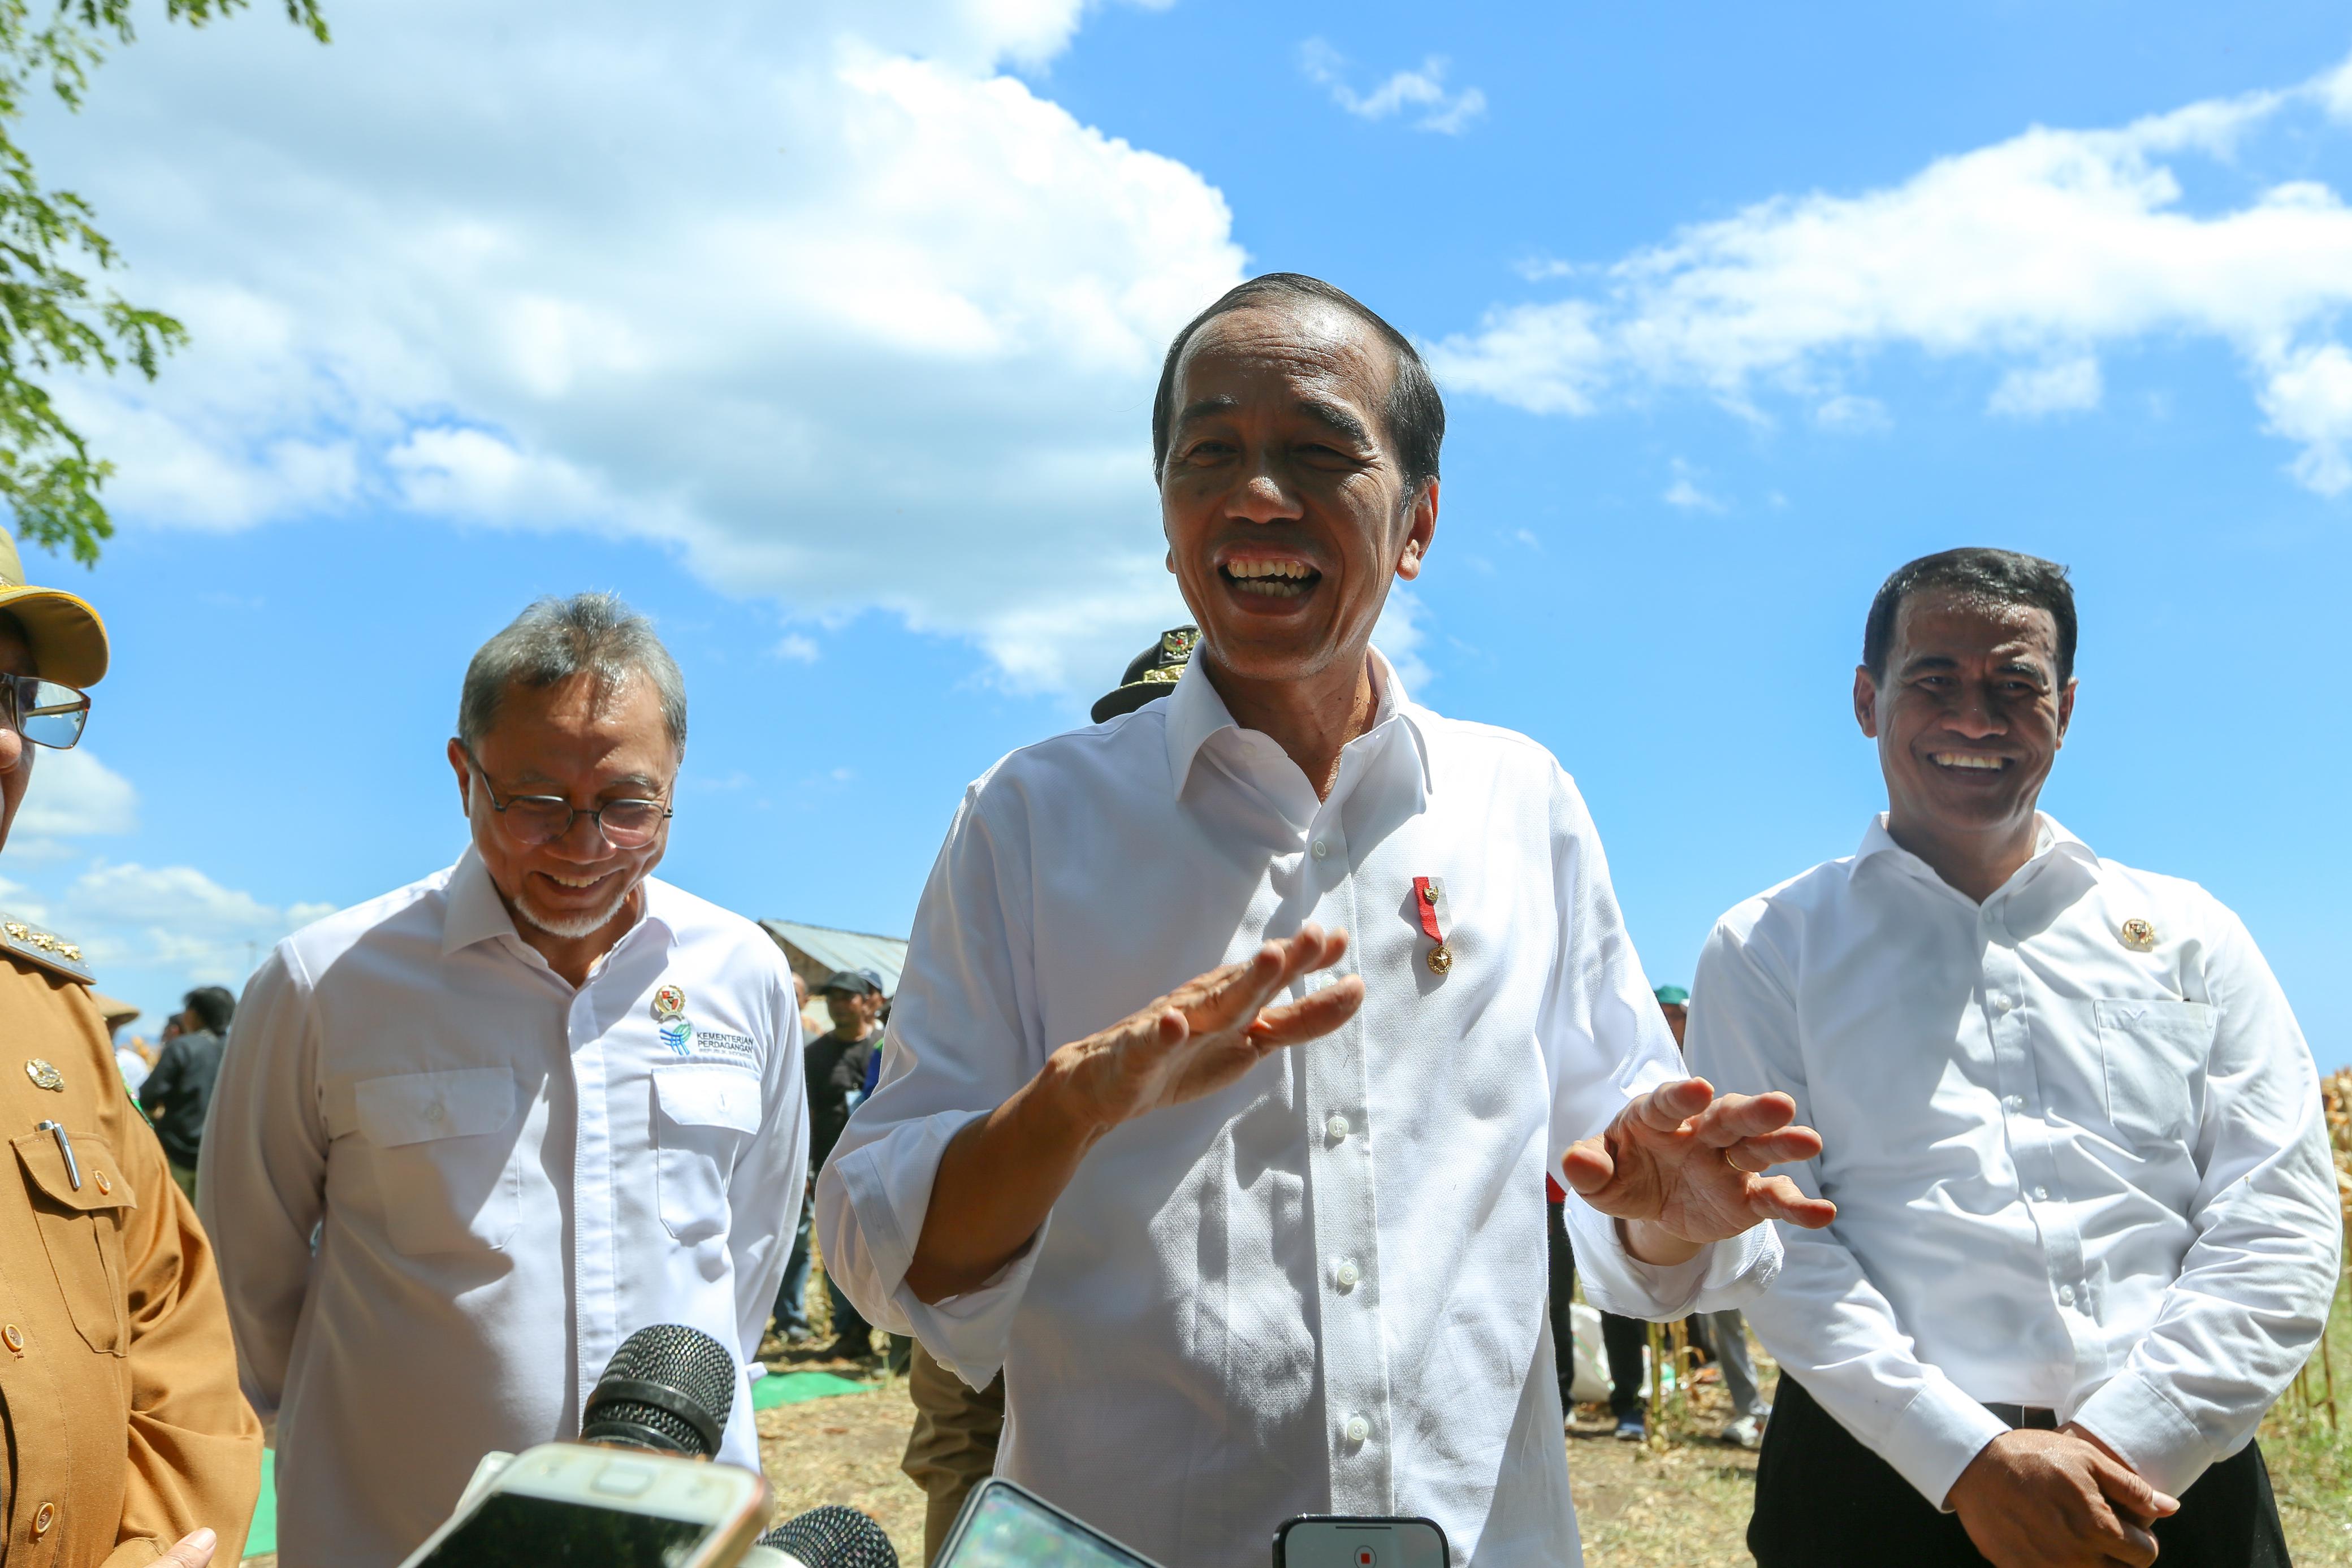 Presiden Panen Jagung bersama Mentan di Sumbawa, Jokowi Tekankan Keseimbangan Harga